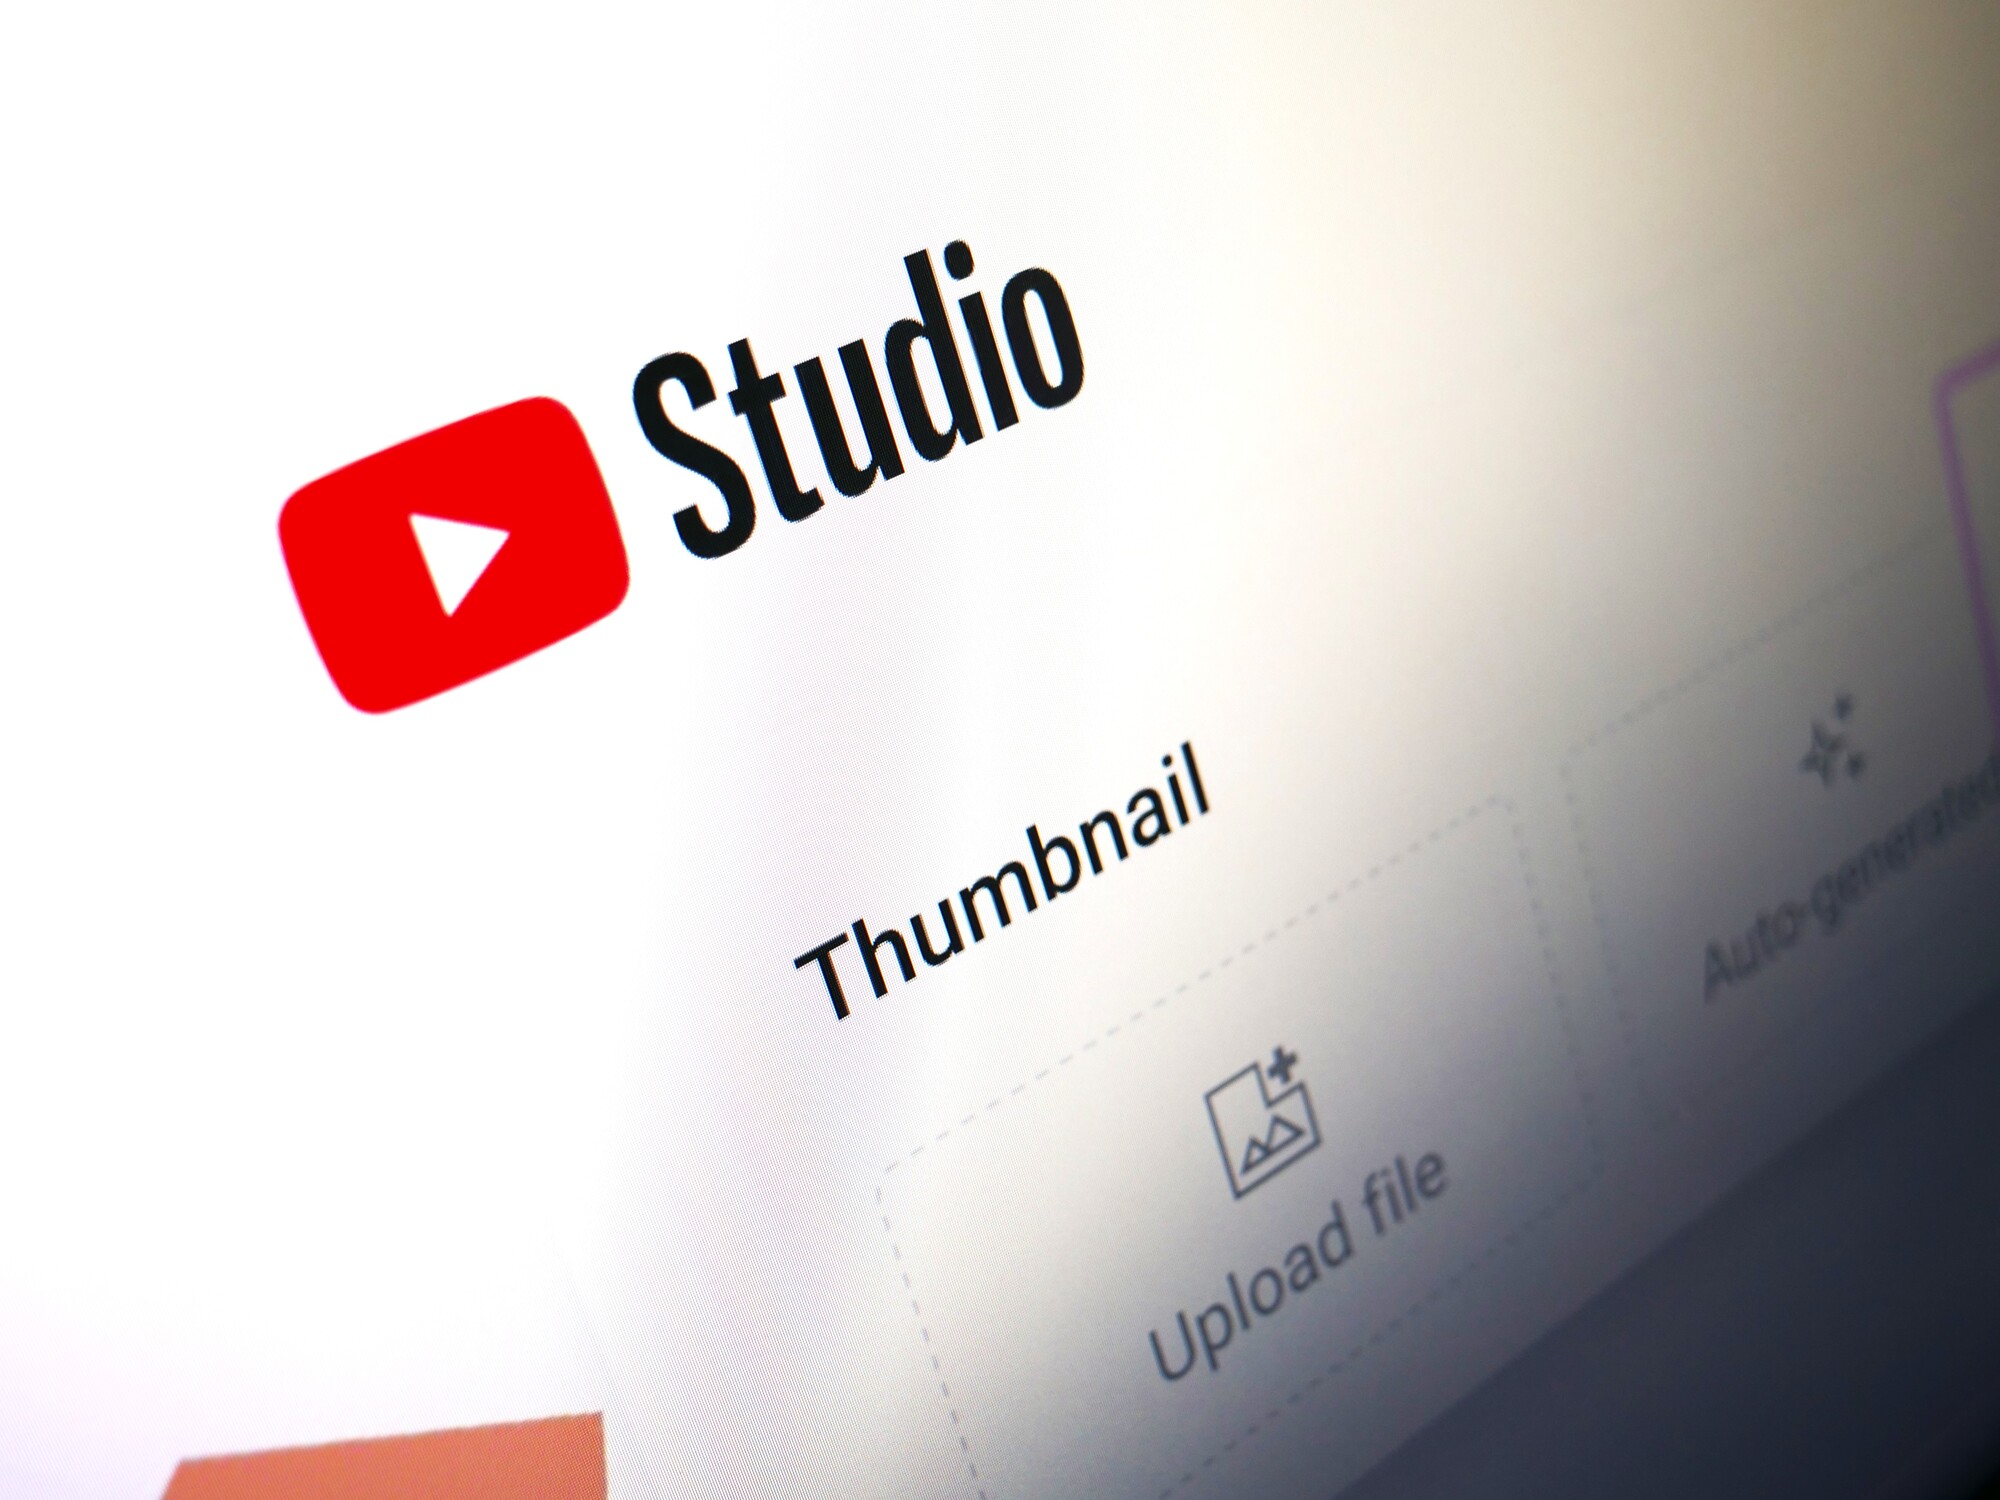 YouTube négocierait avec de grands labels de musique pour de nouveaux outils d'intelligence artificielle